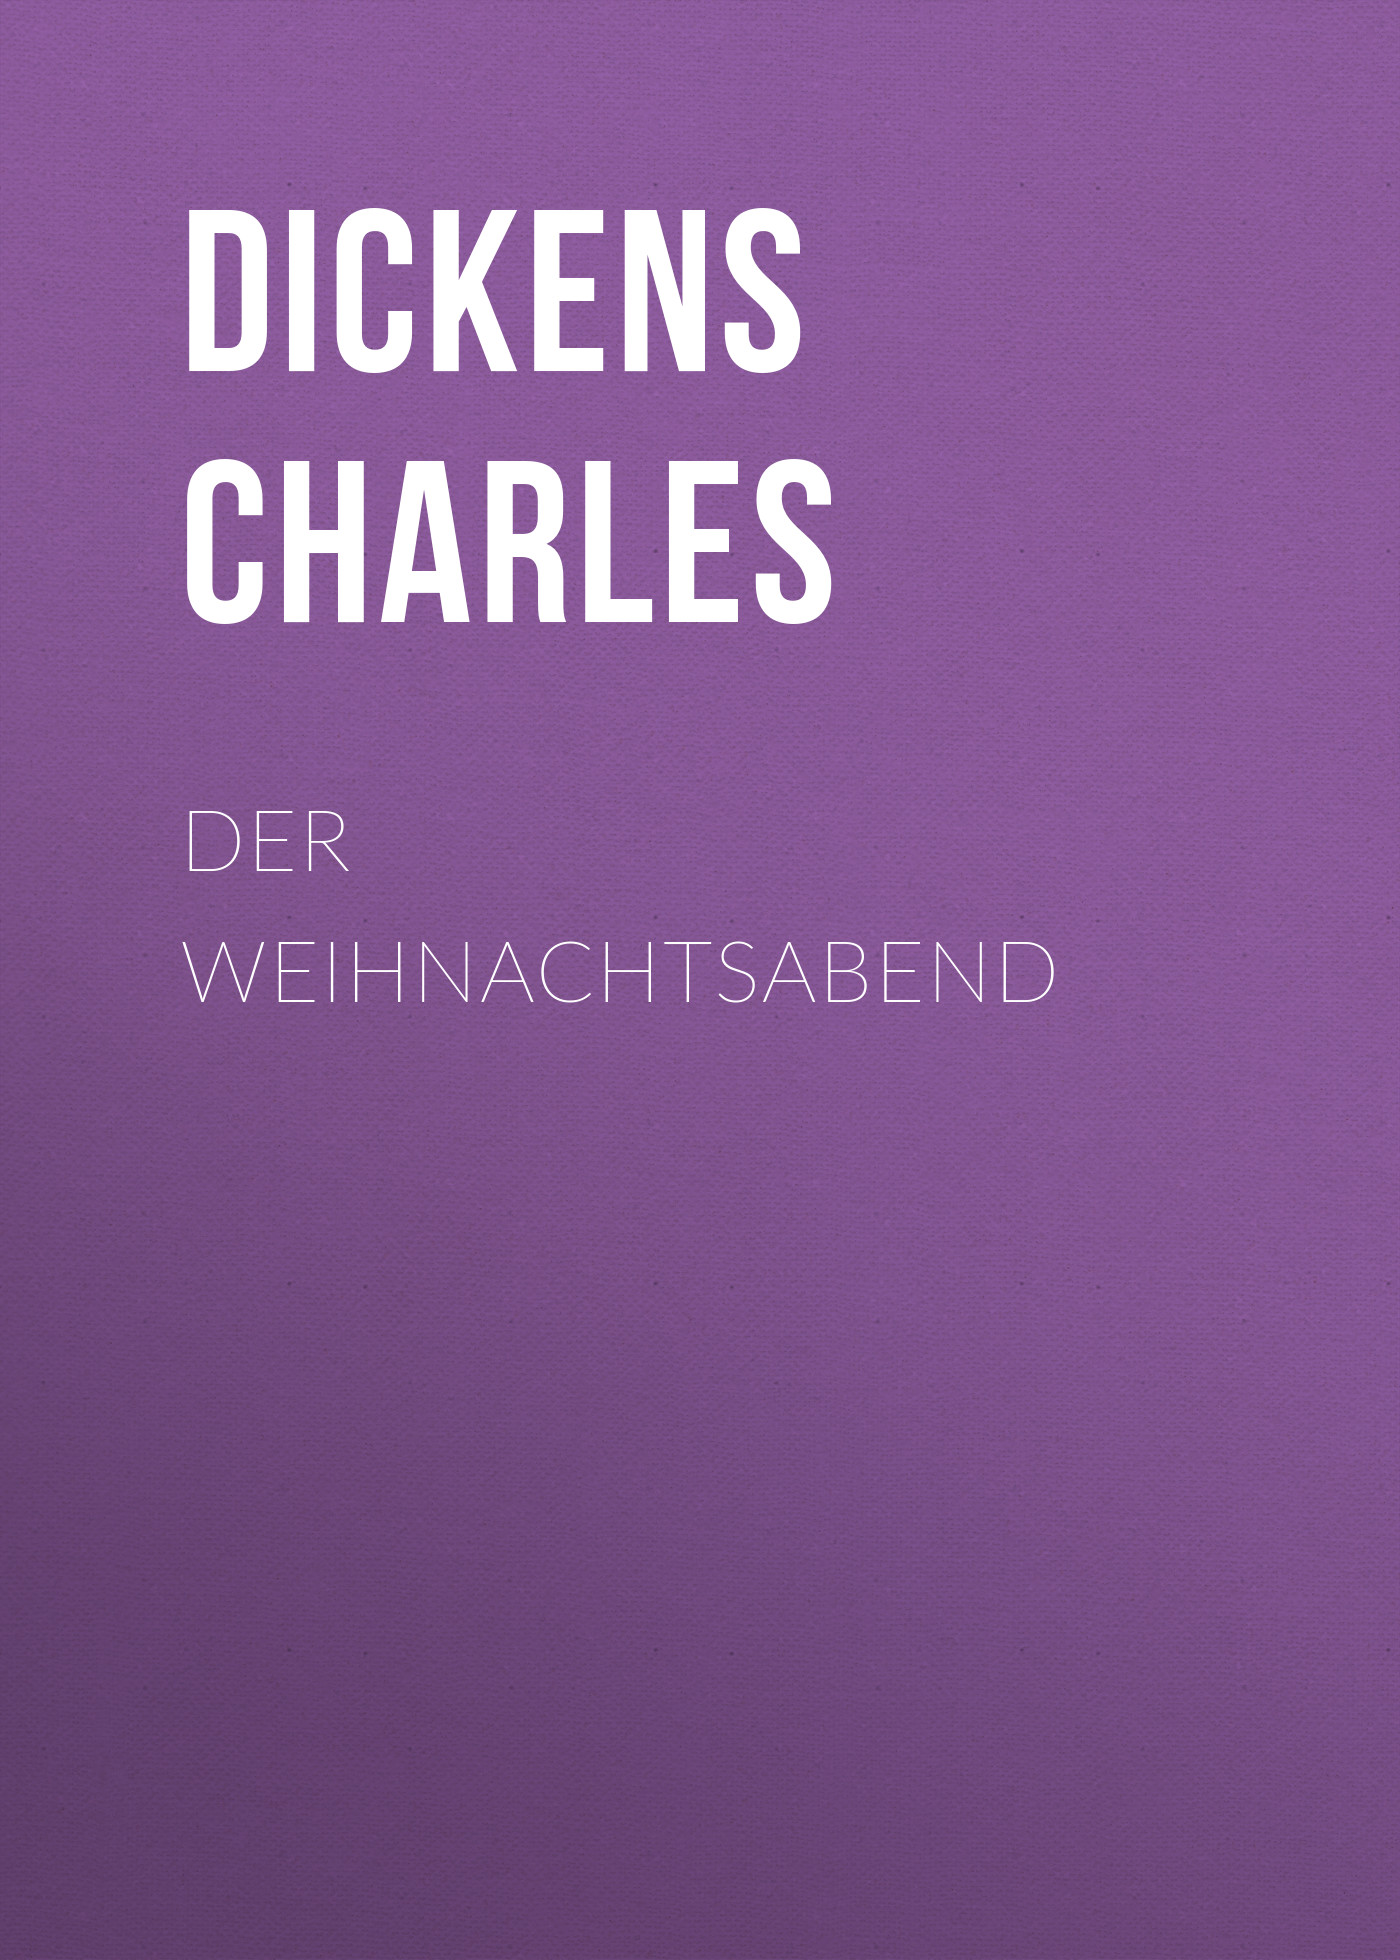 Книга Der Weihnachtsabend из серии , созданная Charles Dickens, может относится к жанру Зарубежная старинная литература, Зарубежная классика. Стоимость электронной книги Der Weihnachtsabend с идентификатором 25092836 составляет 0 руб.